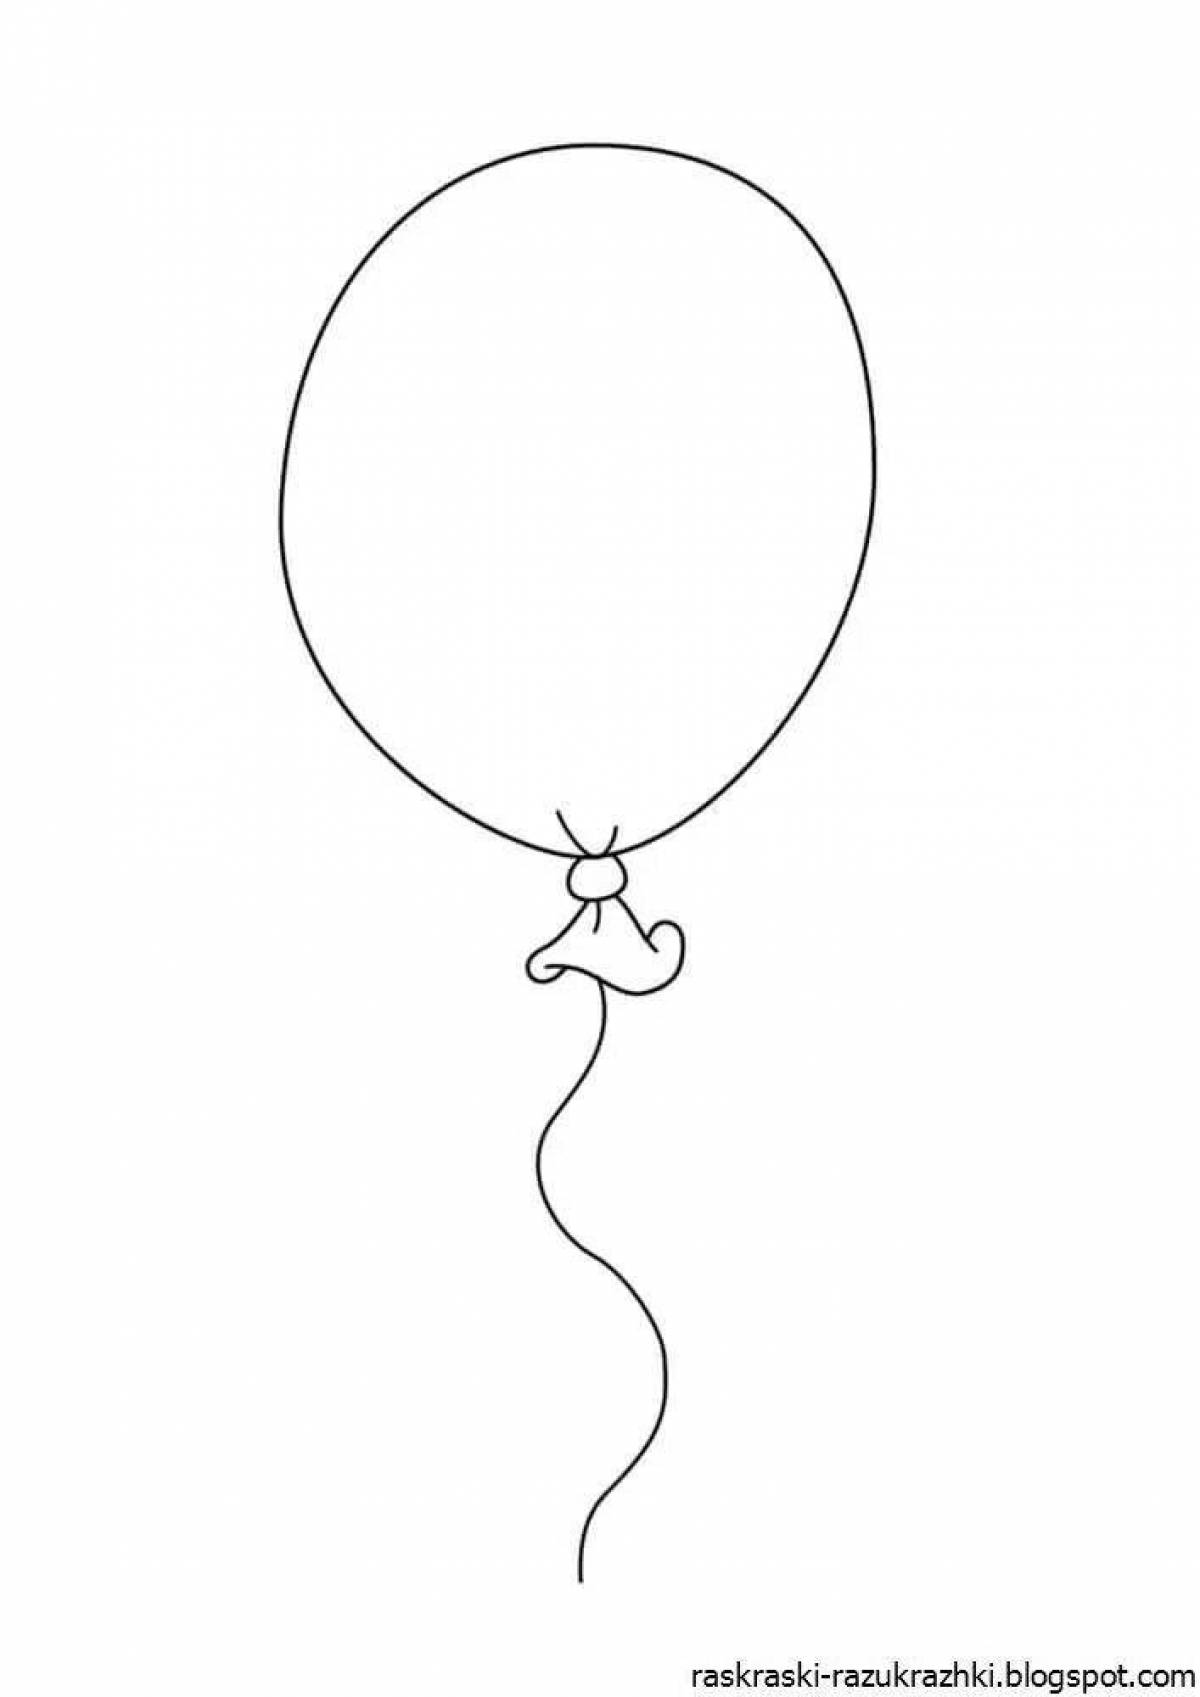 Air balloon #5